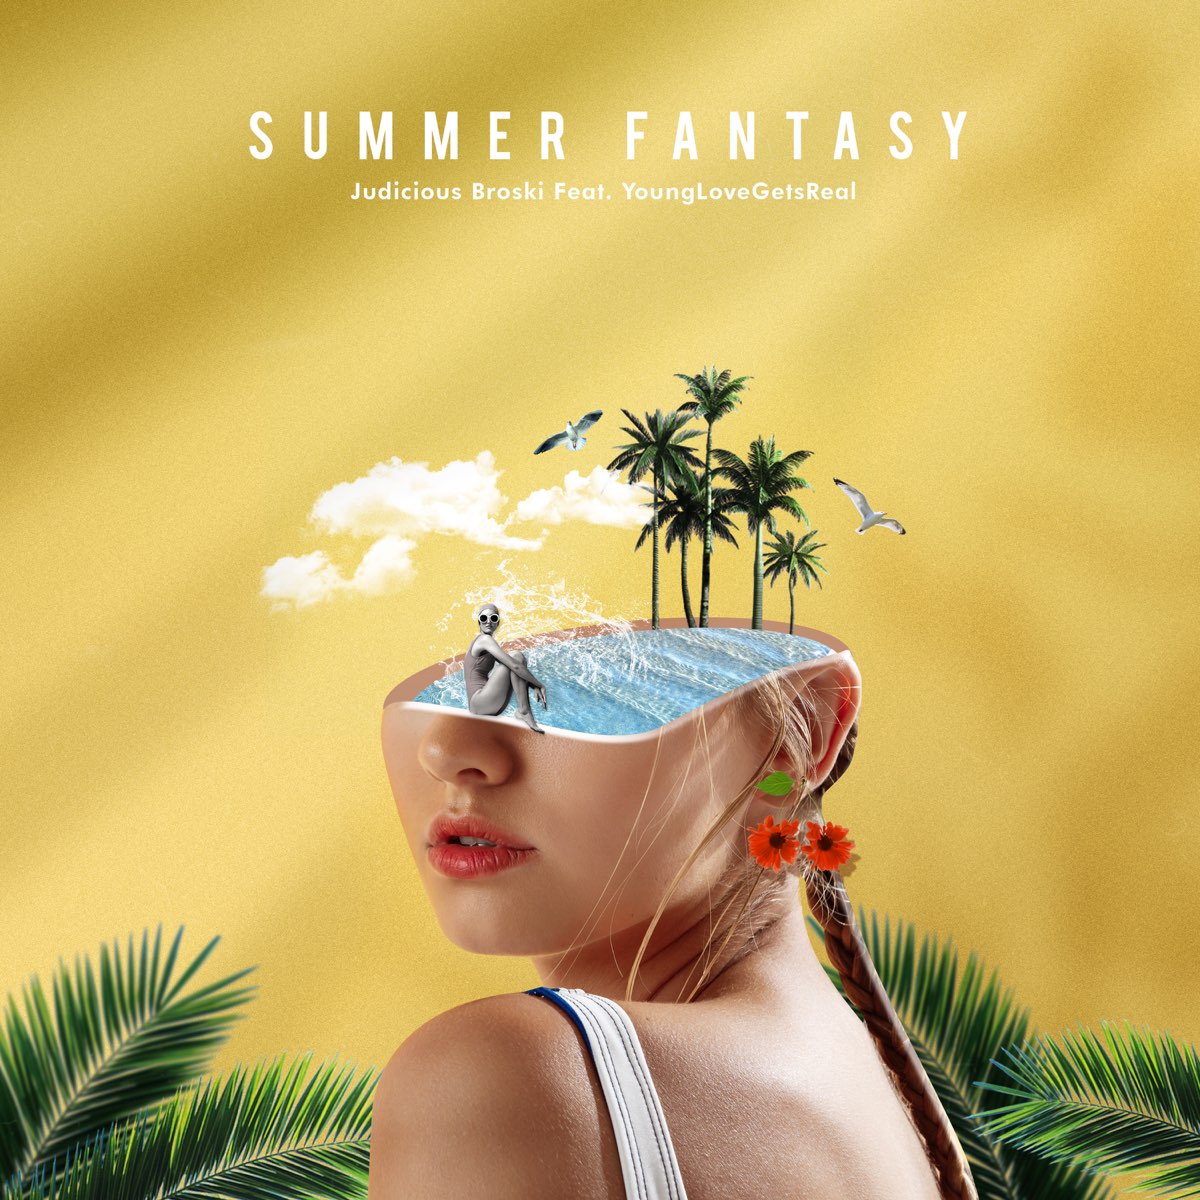 Summer fantasy